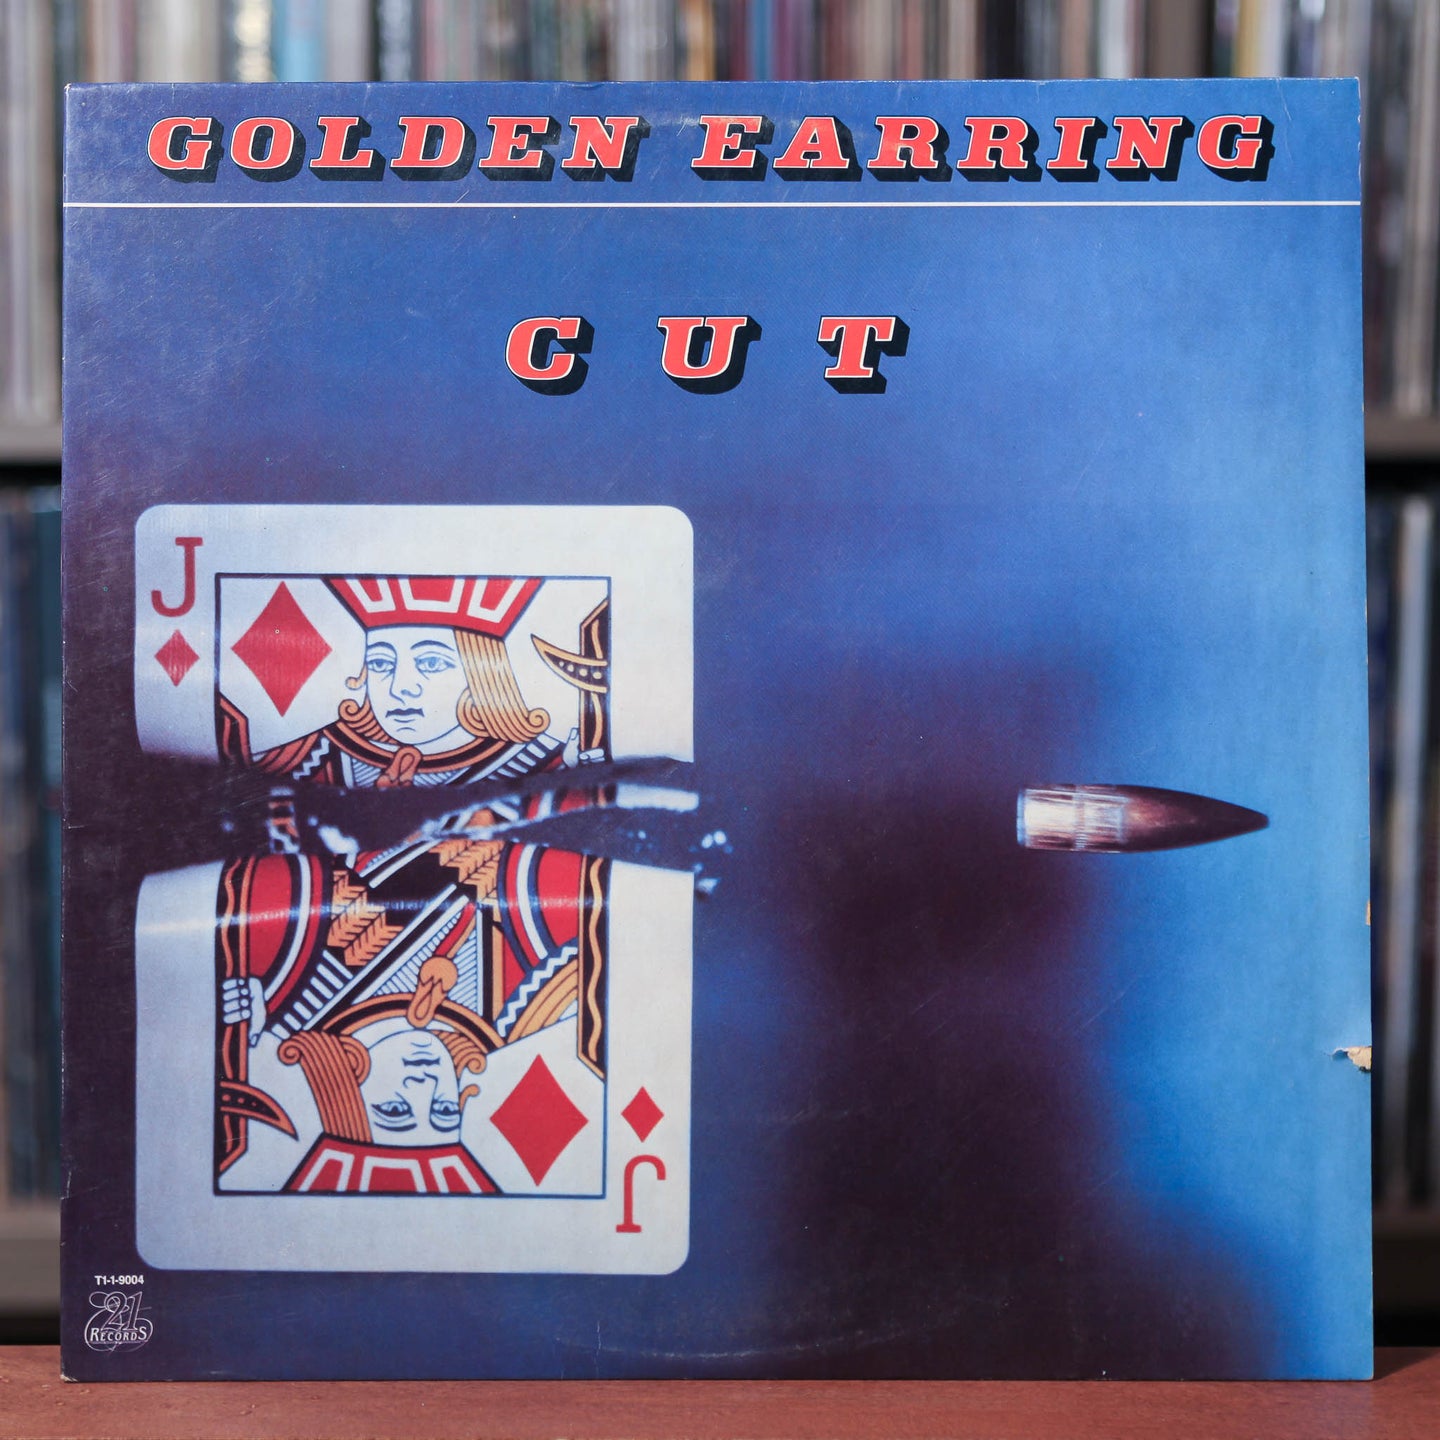 Golden Earring - Cut - 1982 21 Records, VG+/EX